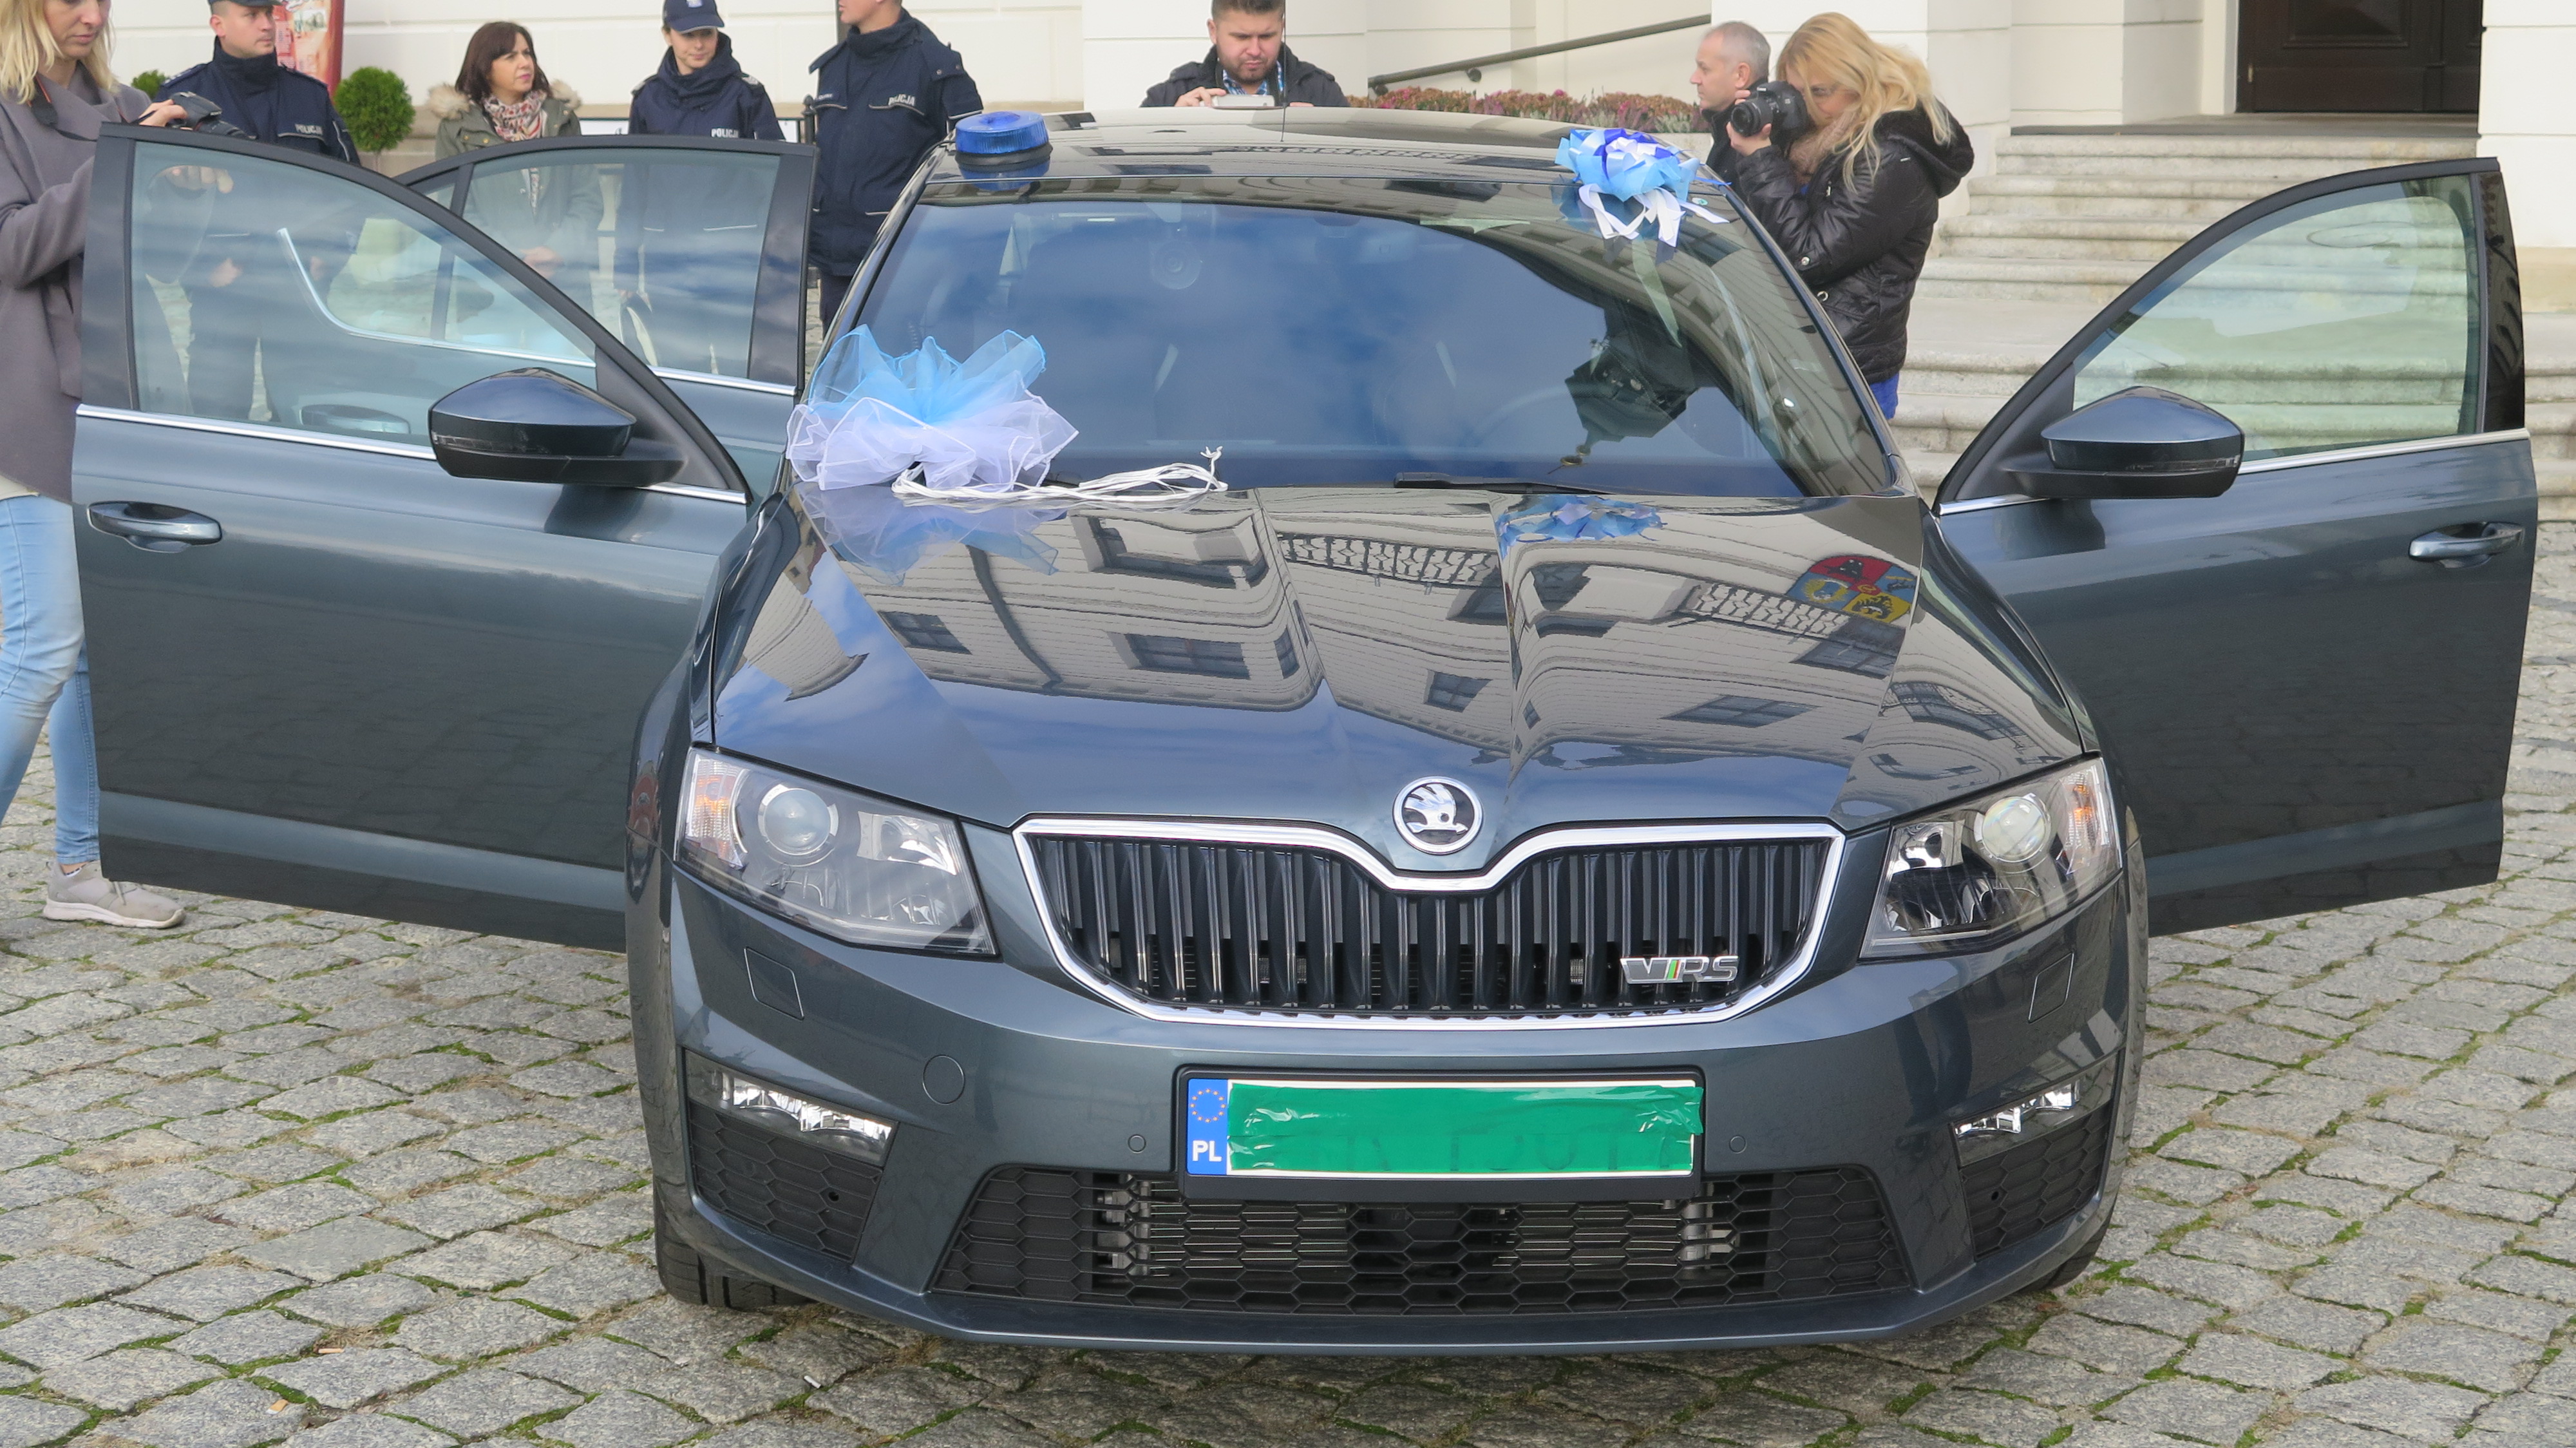 Noeoznakowany pojazd dla głogowskiej policji. - zdjęcie 1